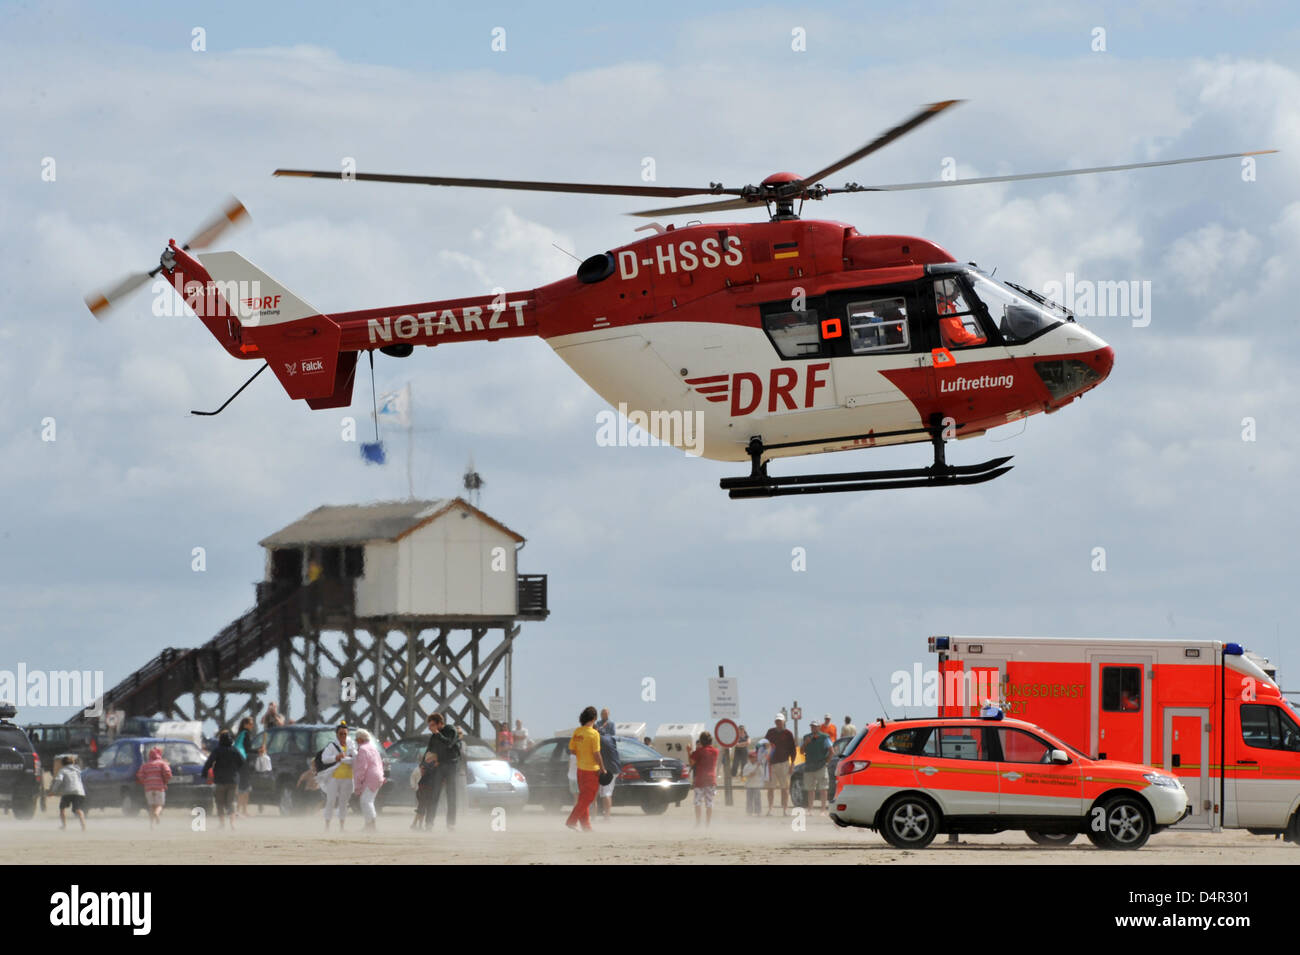 Il Salvataggio in elicottero ?Christoph Europa 5? La DRF Luftrettung (air rescue service) decolla presso la spiaggia di Sankt Peter-Ording, Germania, 13 agosto 2009. Foto: Patrick Seeger Foto Stock